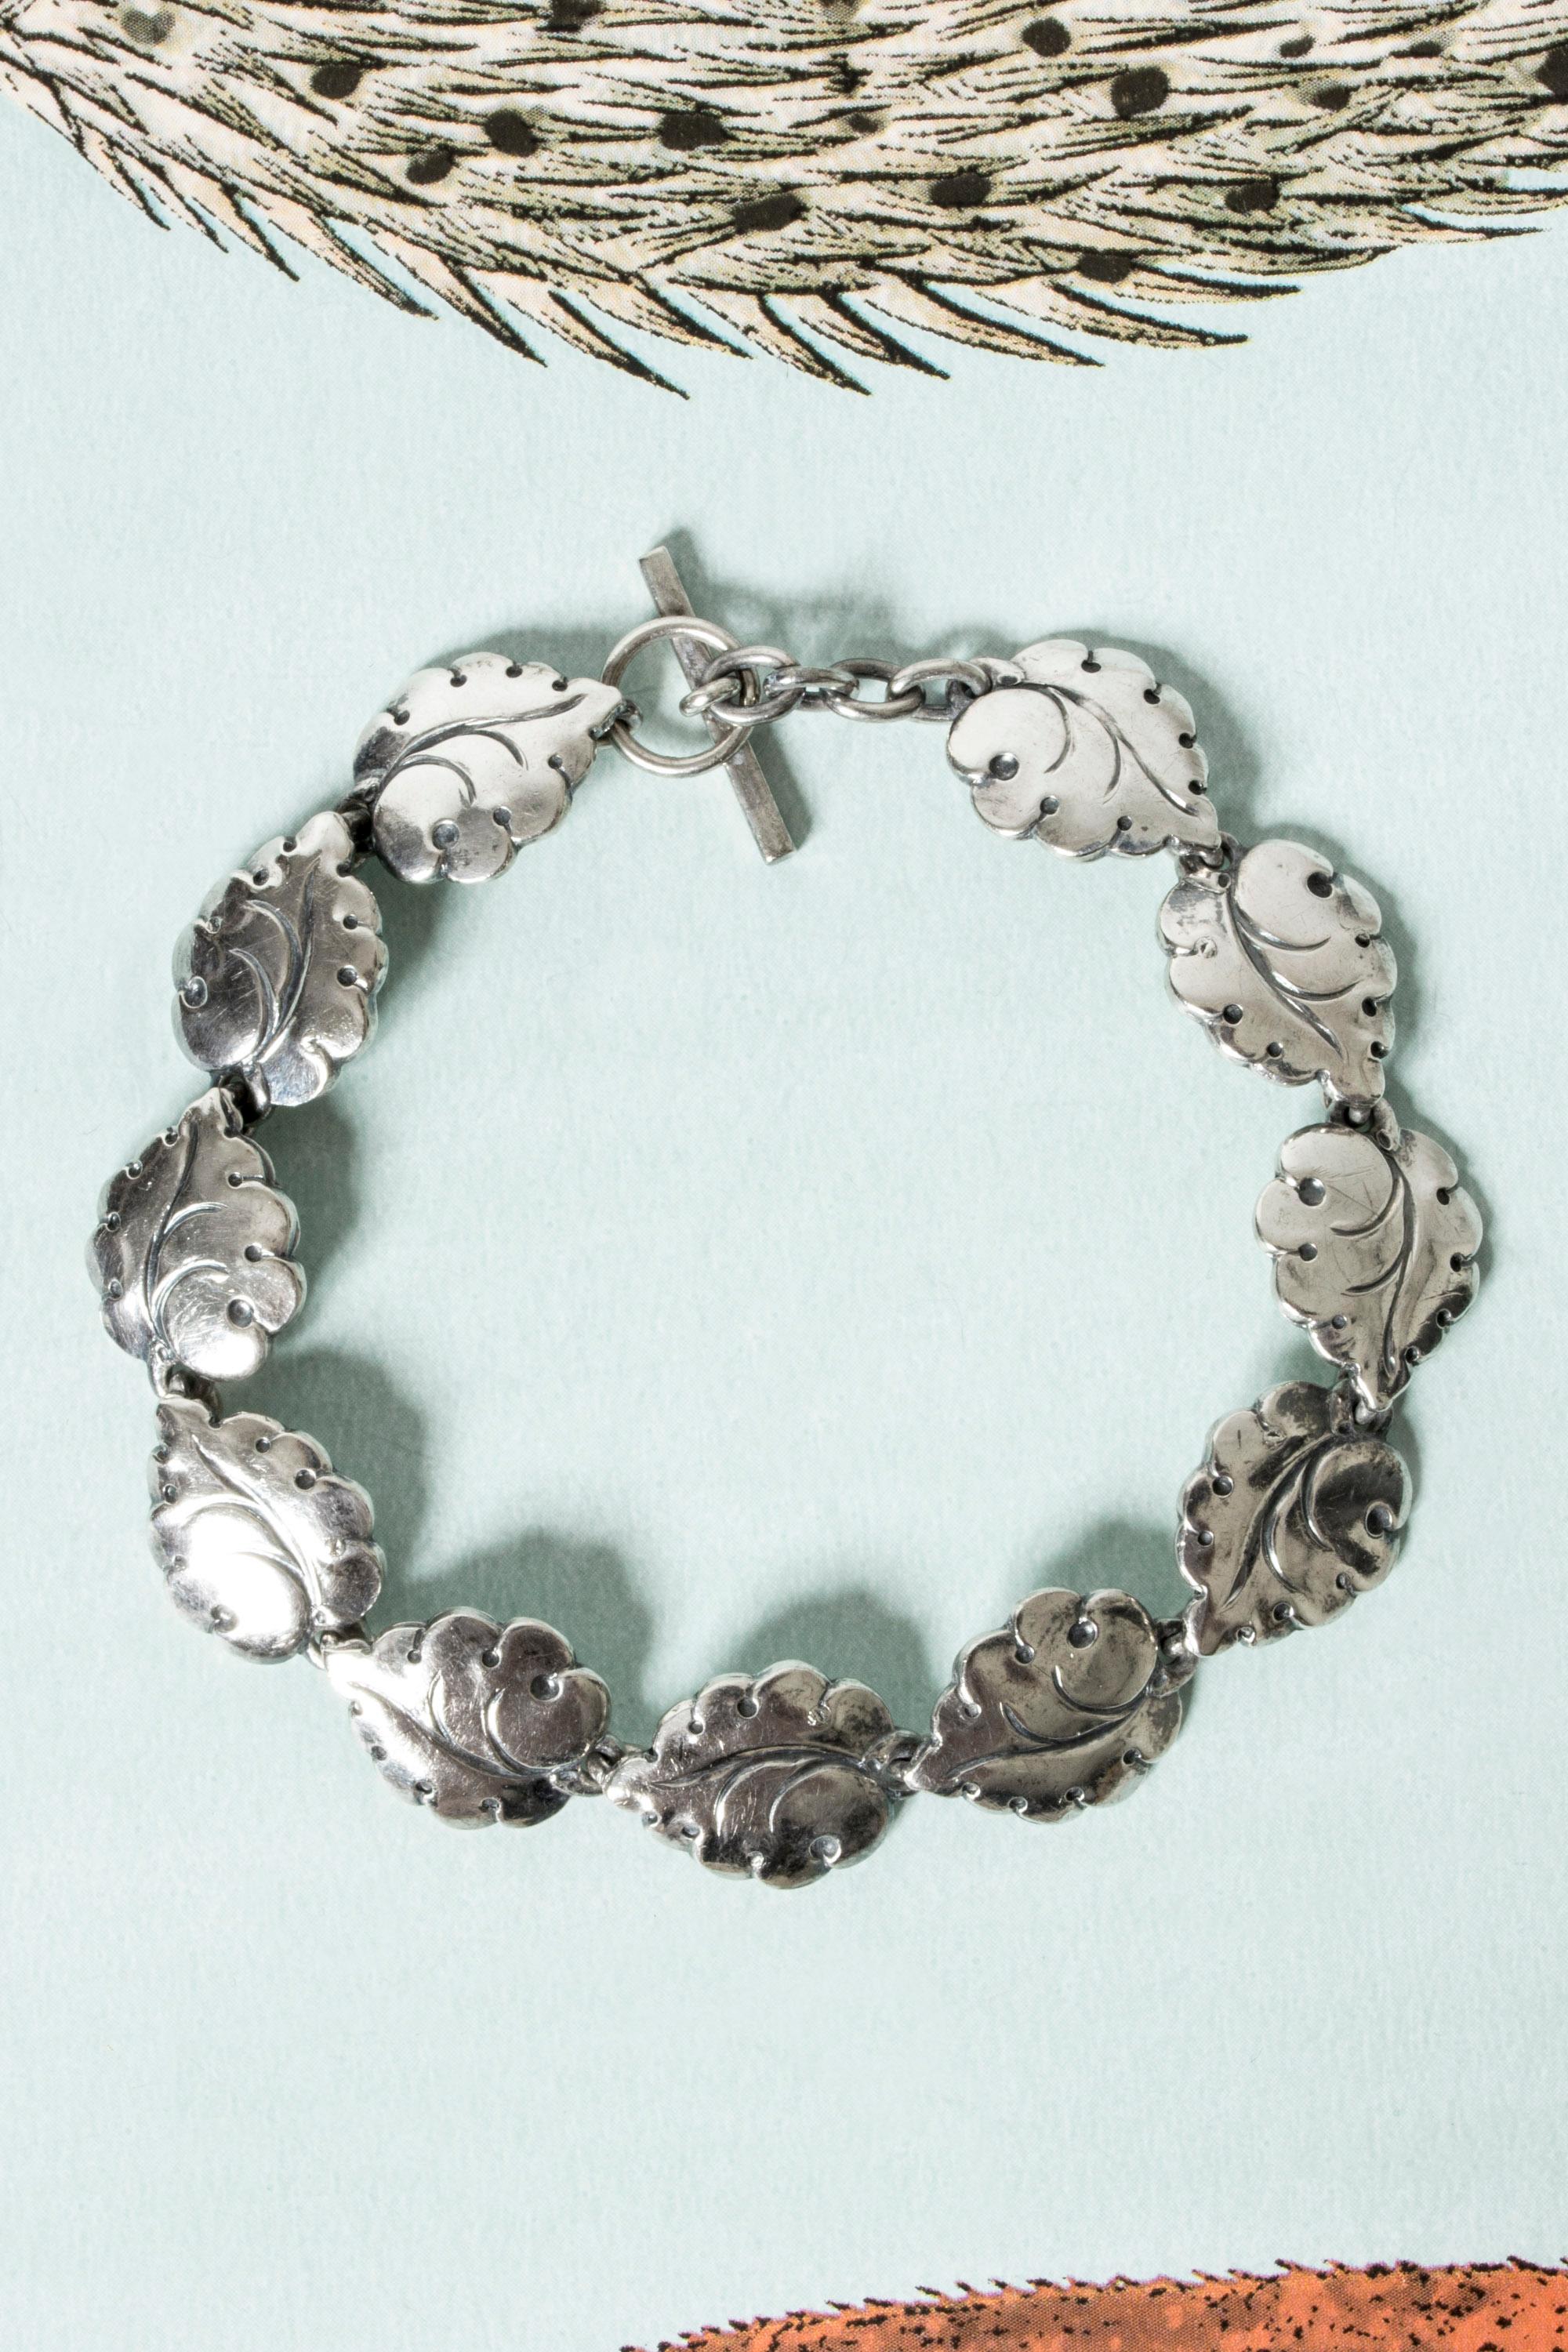 Joli bracelet en argent de Hugo Grün, avec des maillons en forme de feuilles. Très belle attention aux détails, élégant et léger au poignet.